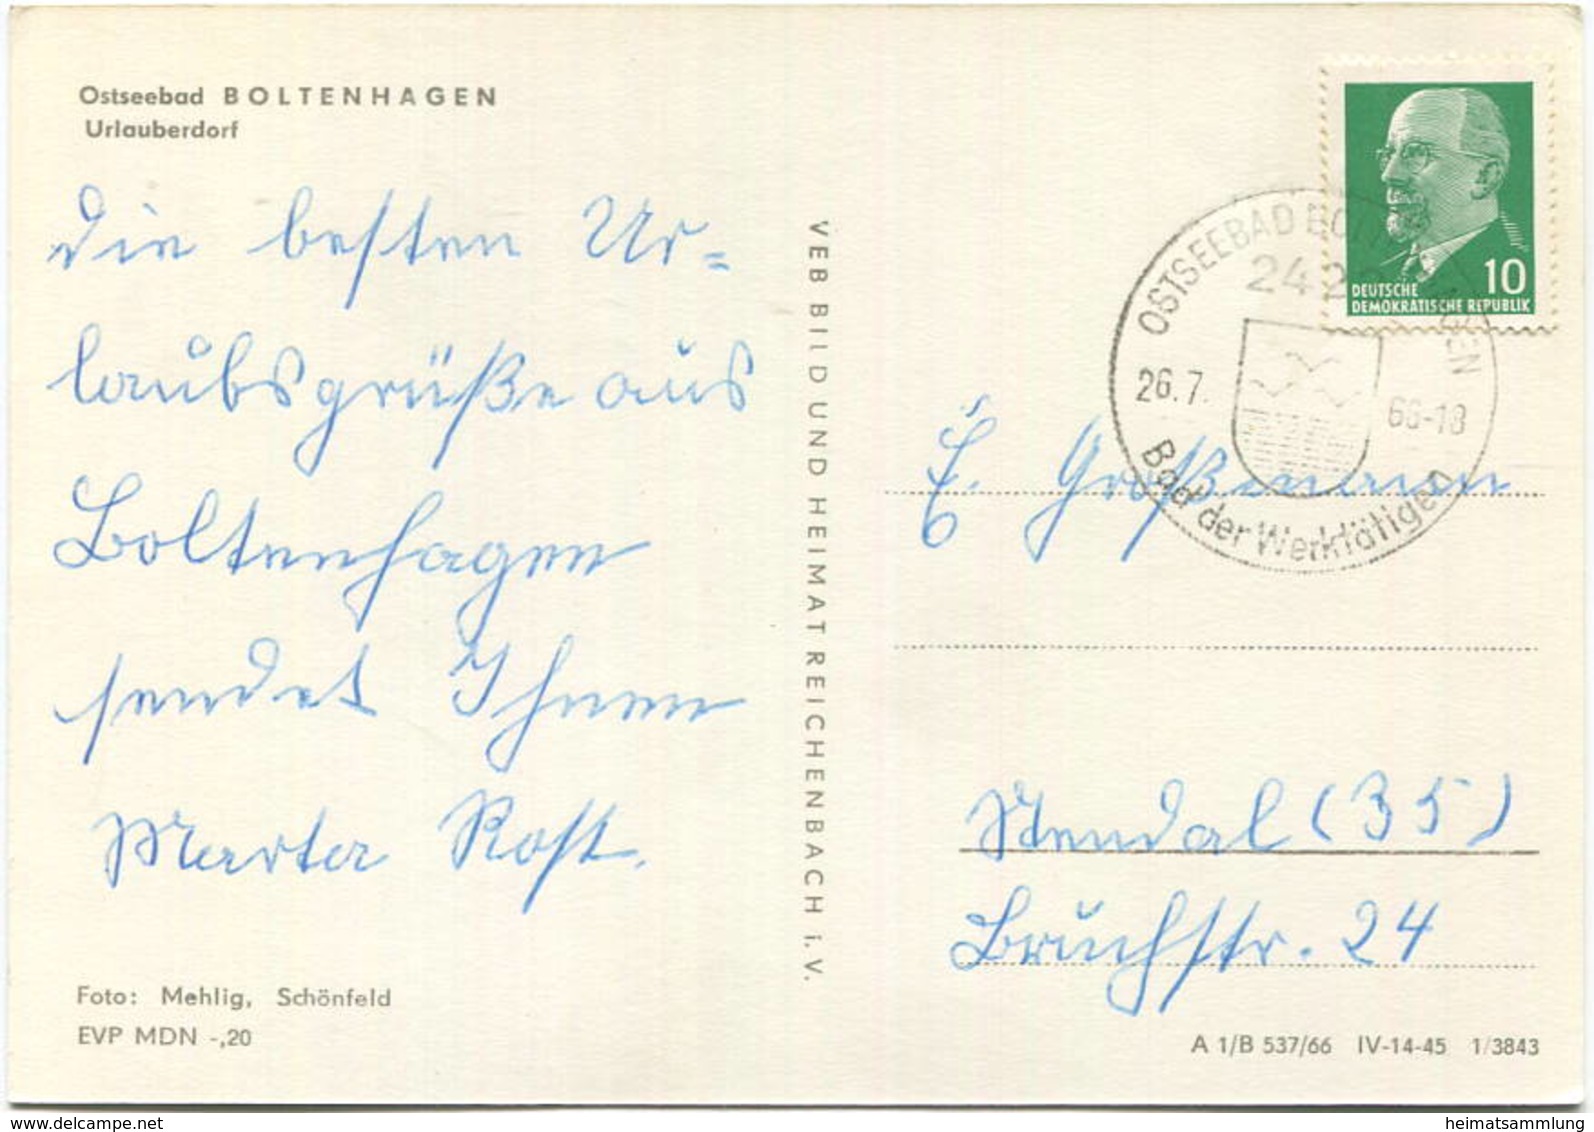 Boltenhagen - Urlauberdorf - Foto-AK Grossformat - Verlag VEB Bild Und Heimat Reichenbach Gel. 1966 - Boltenhagen